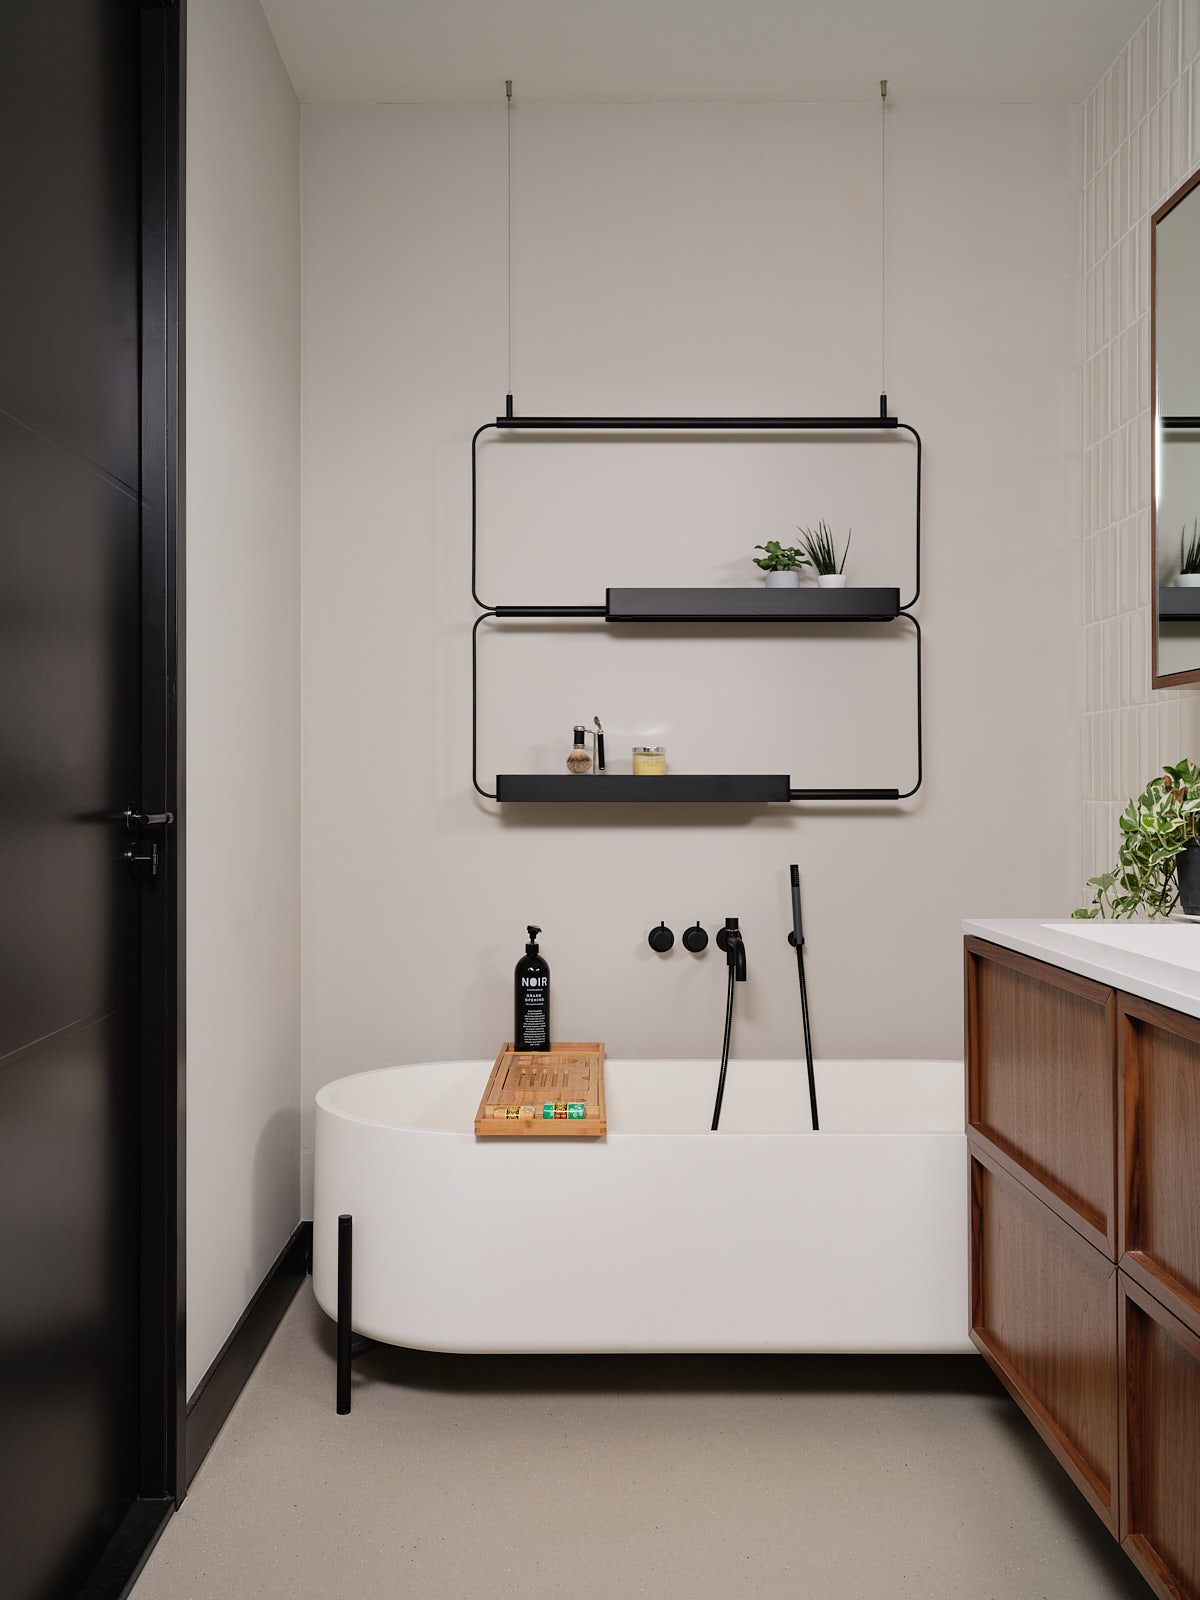 moderne badkamer met vrijstaand bad op pootjes, zwart stalen wandrek, zwarte deuren en plinten, notenhouten wastafel en witte tegeltjes